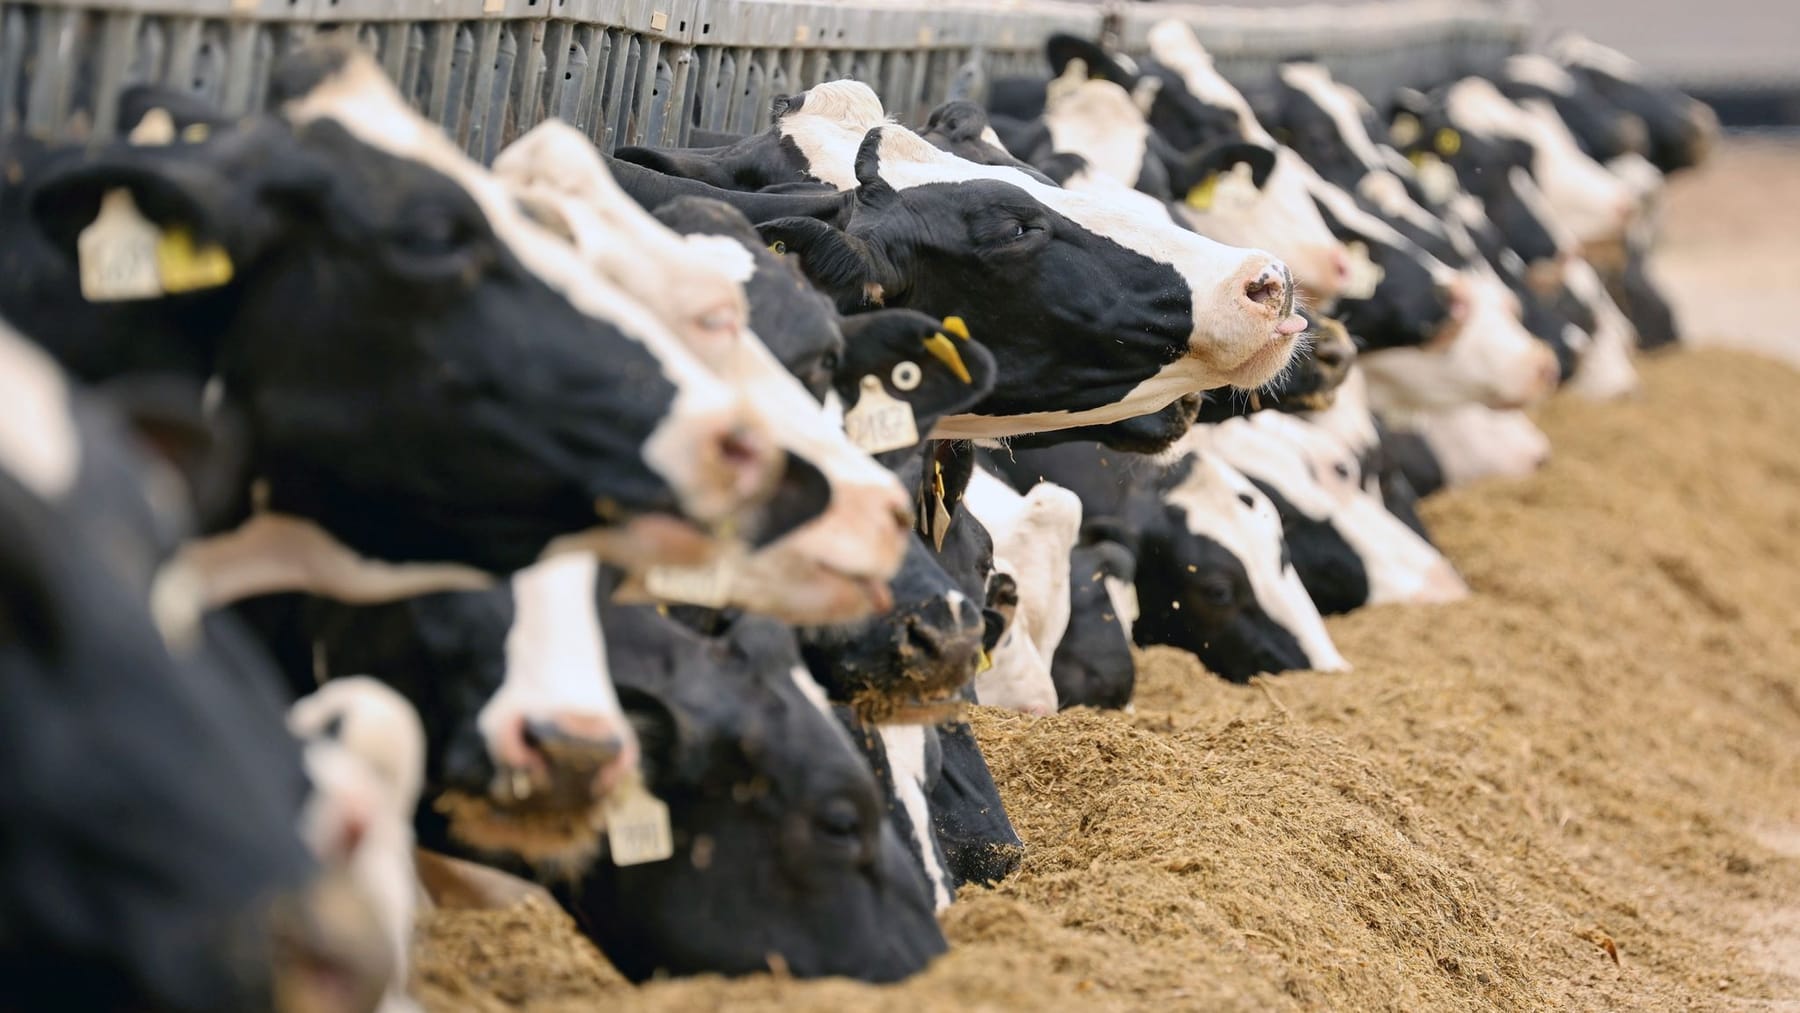 Milchkonsum der Deutschen sinkt: Vegane Alternativen werden immer beliebter